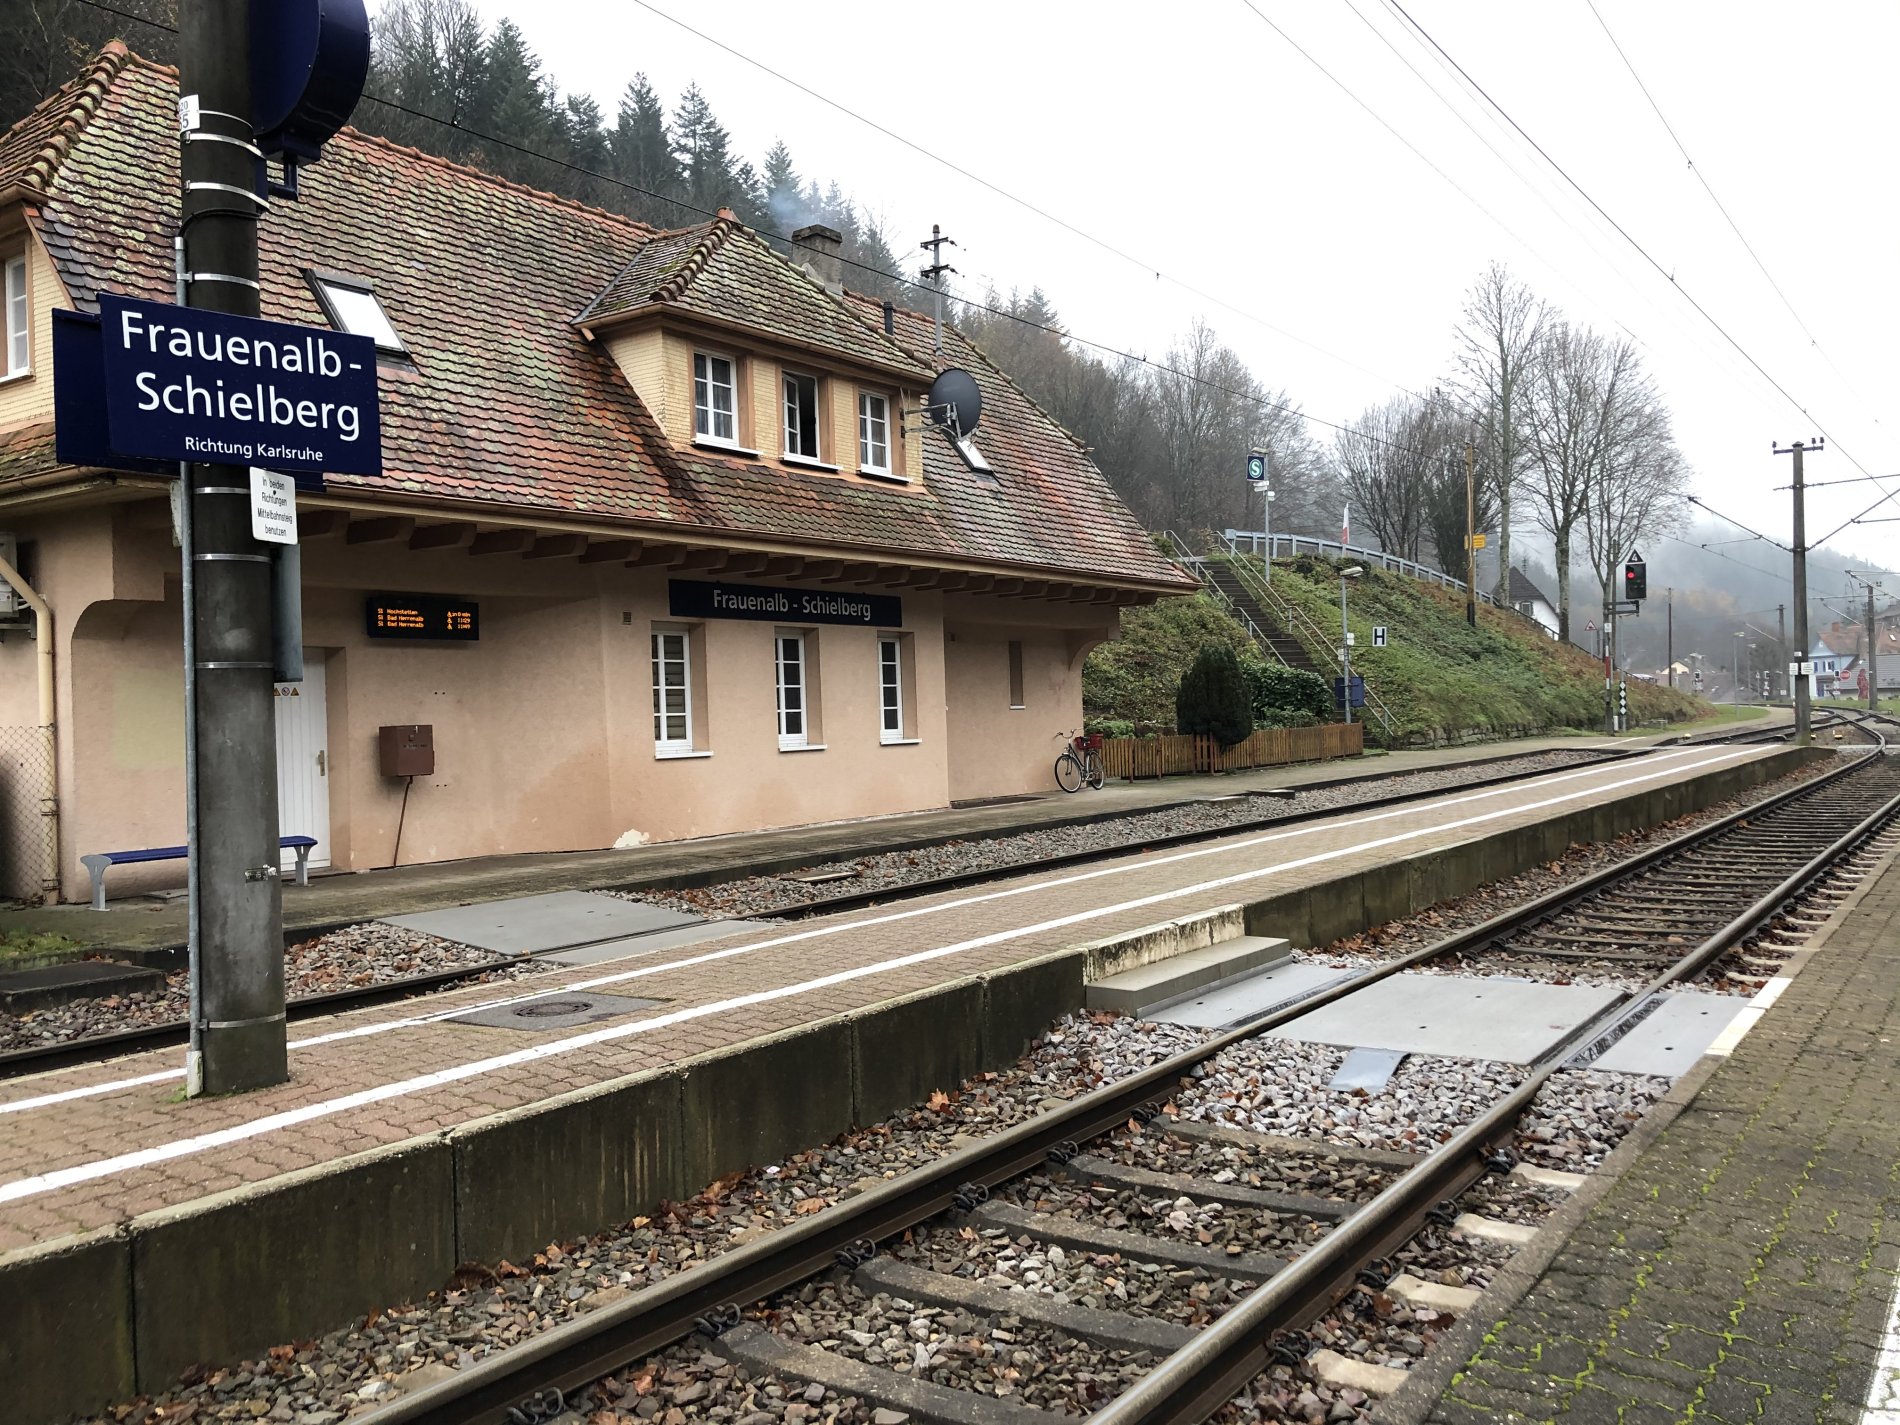 Zu sehen ist die Bahnhofseinfahrt des Bahnhof Frauenalb-Schielberg